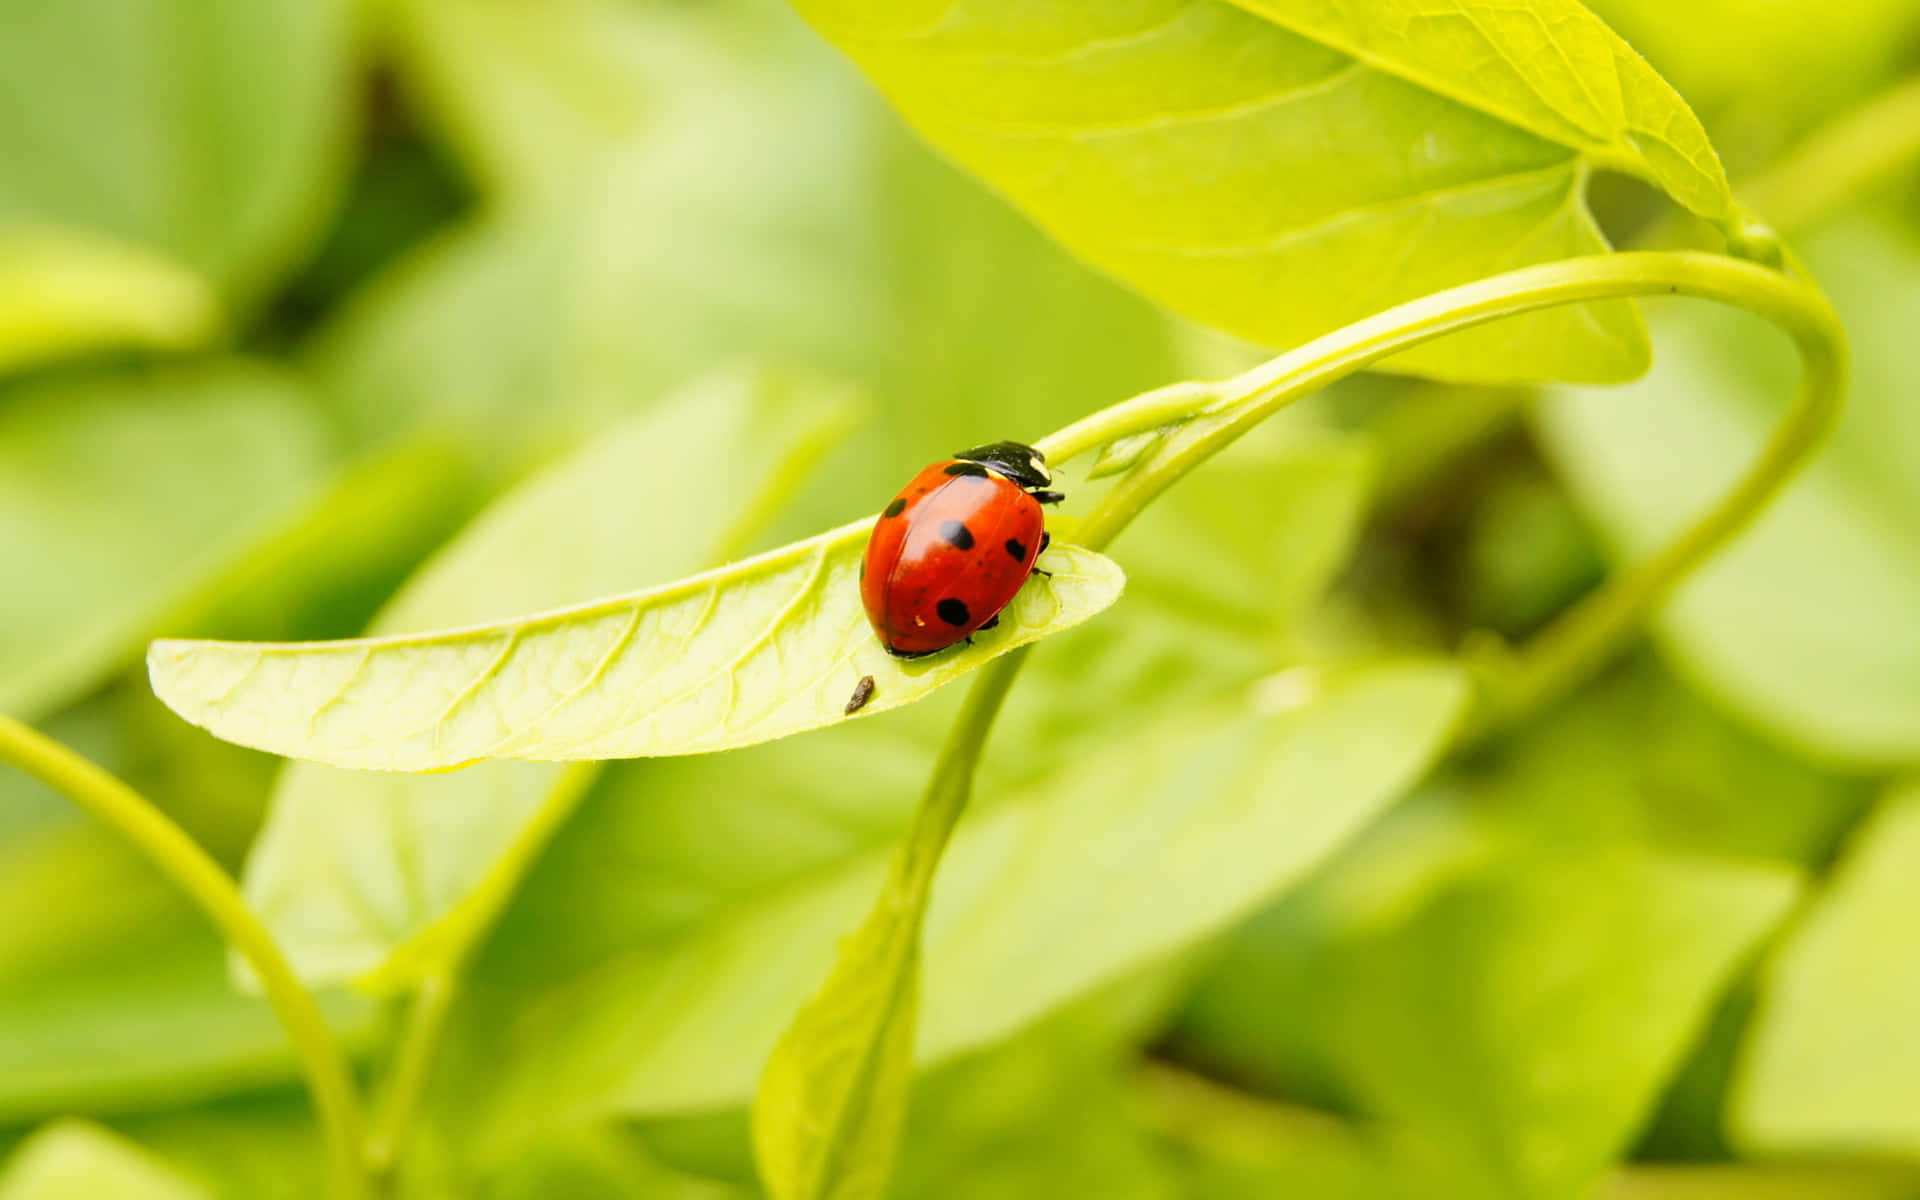 A Beautiful Ladybug Sitting on a Leaf